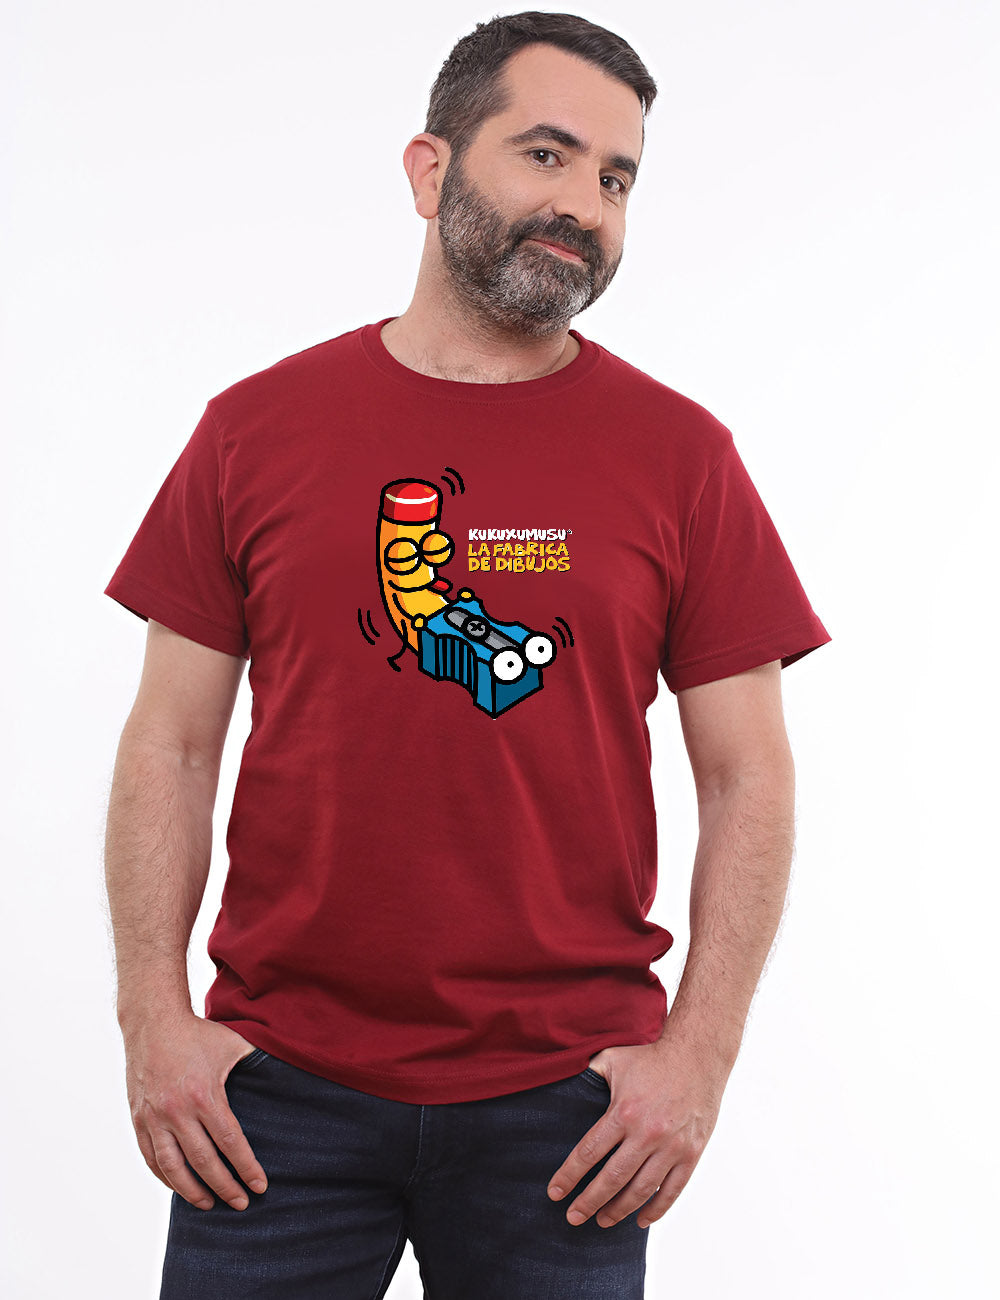 Zascapuntas Mens T-Shirt